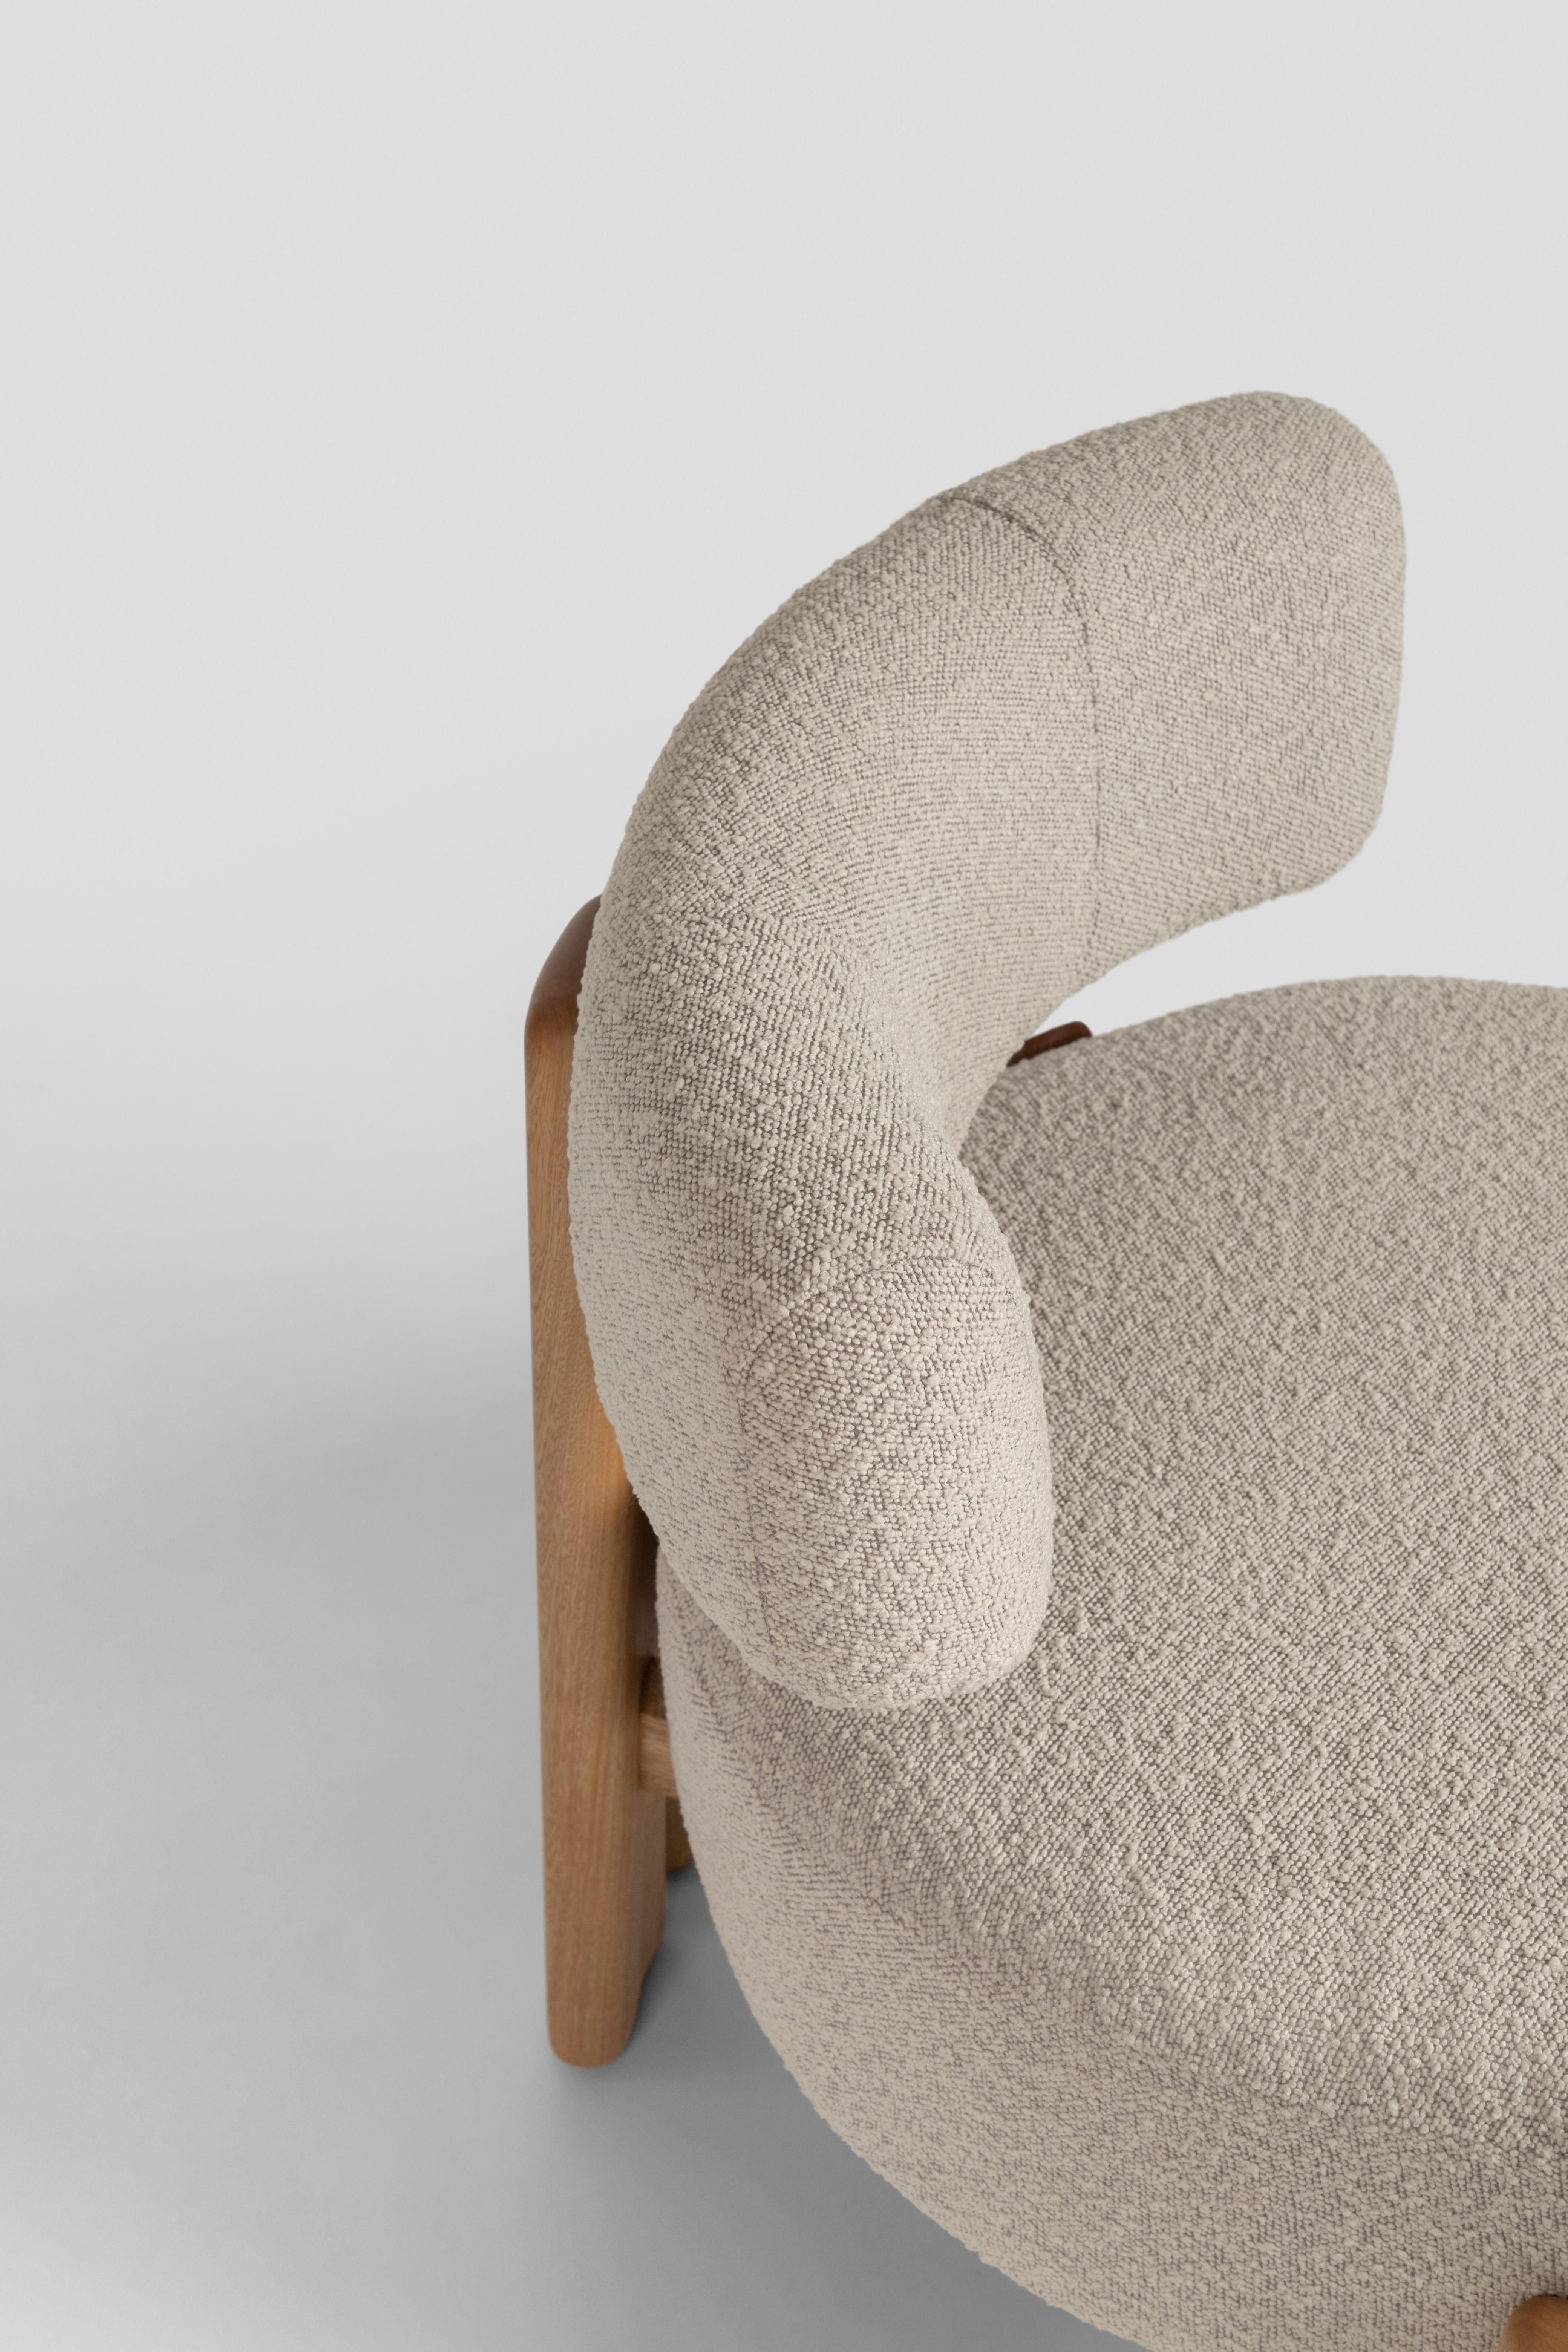 De la Paz Low Chair Massivholz, Contemporary Mexican Design (Moderne) im Angebot